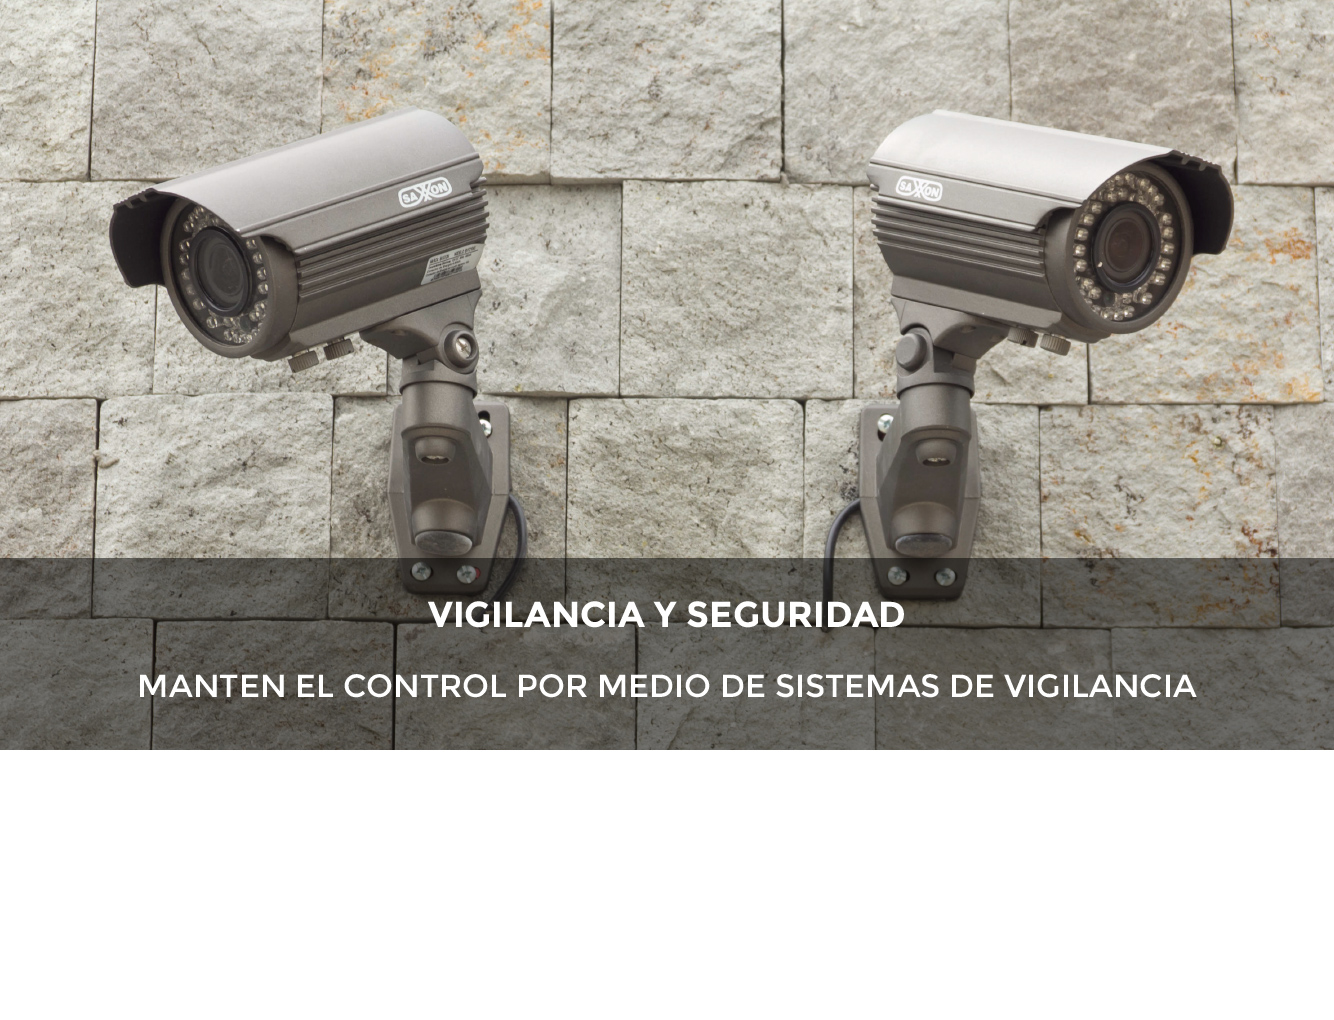 CCTV y Seguridad